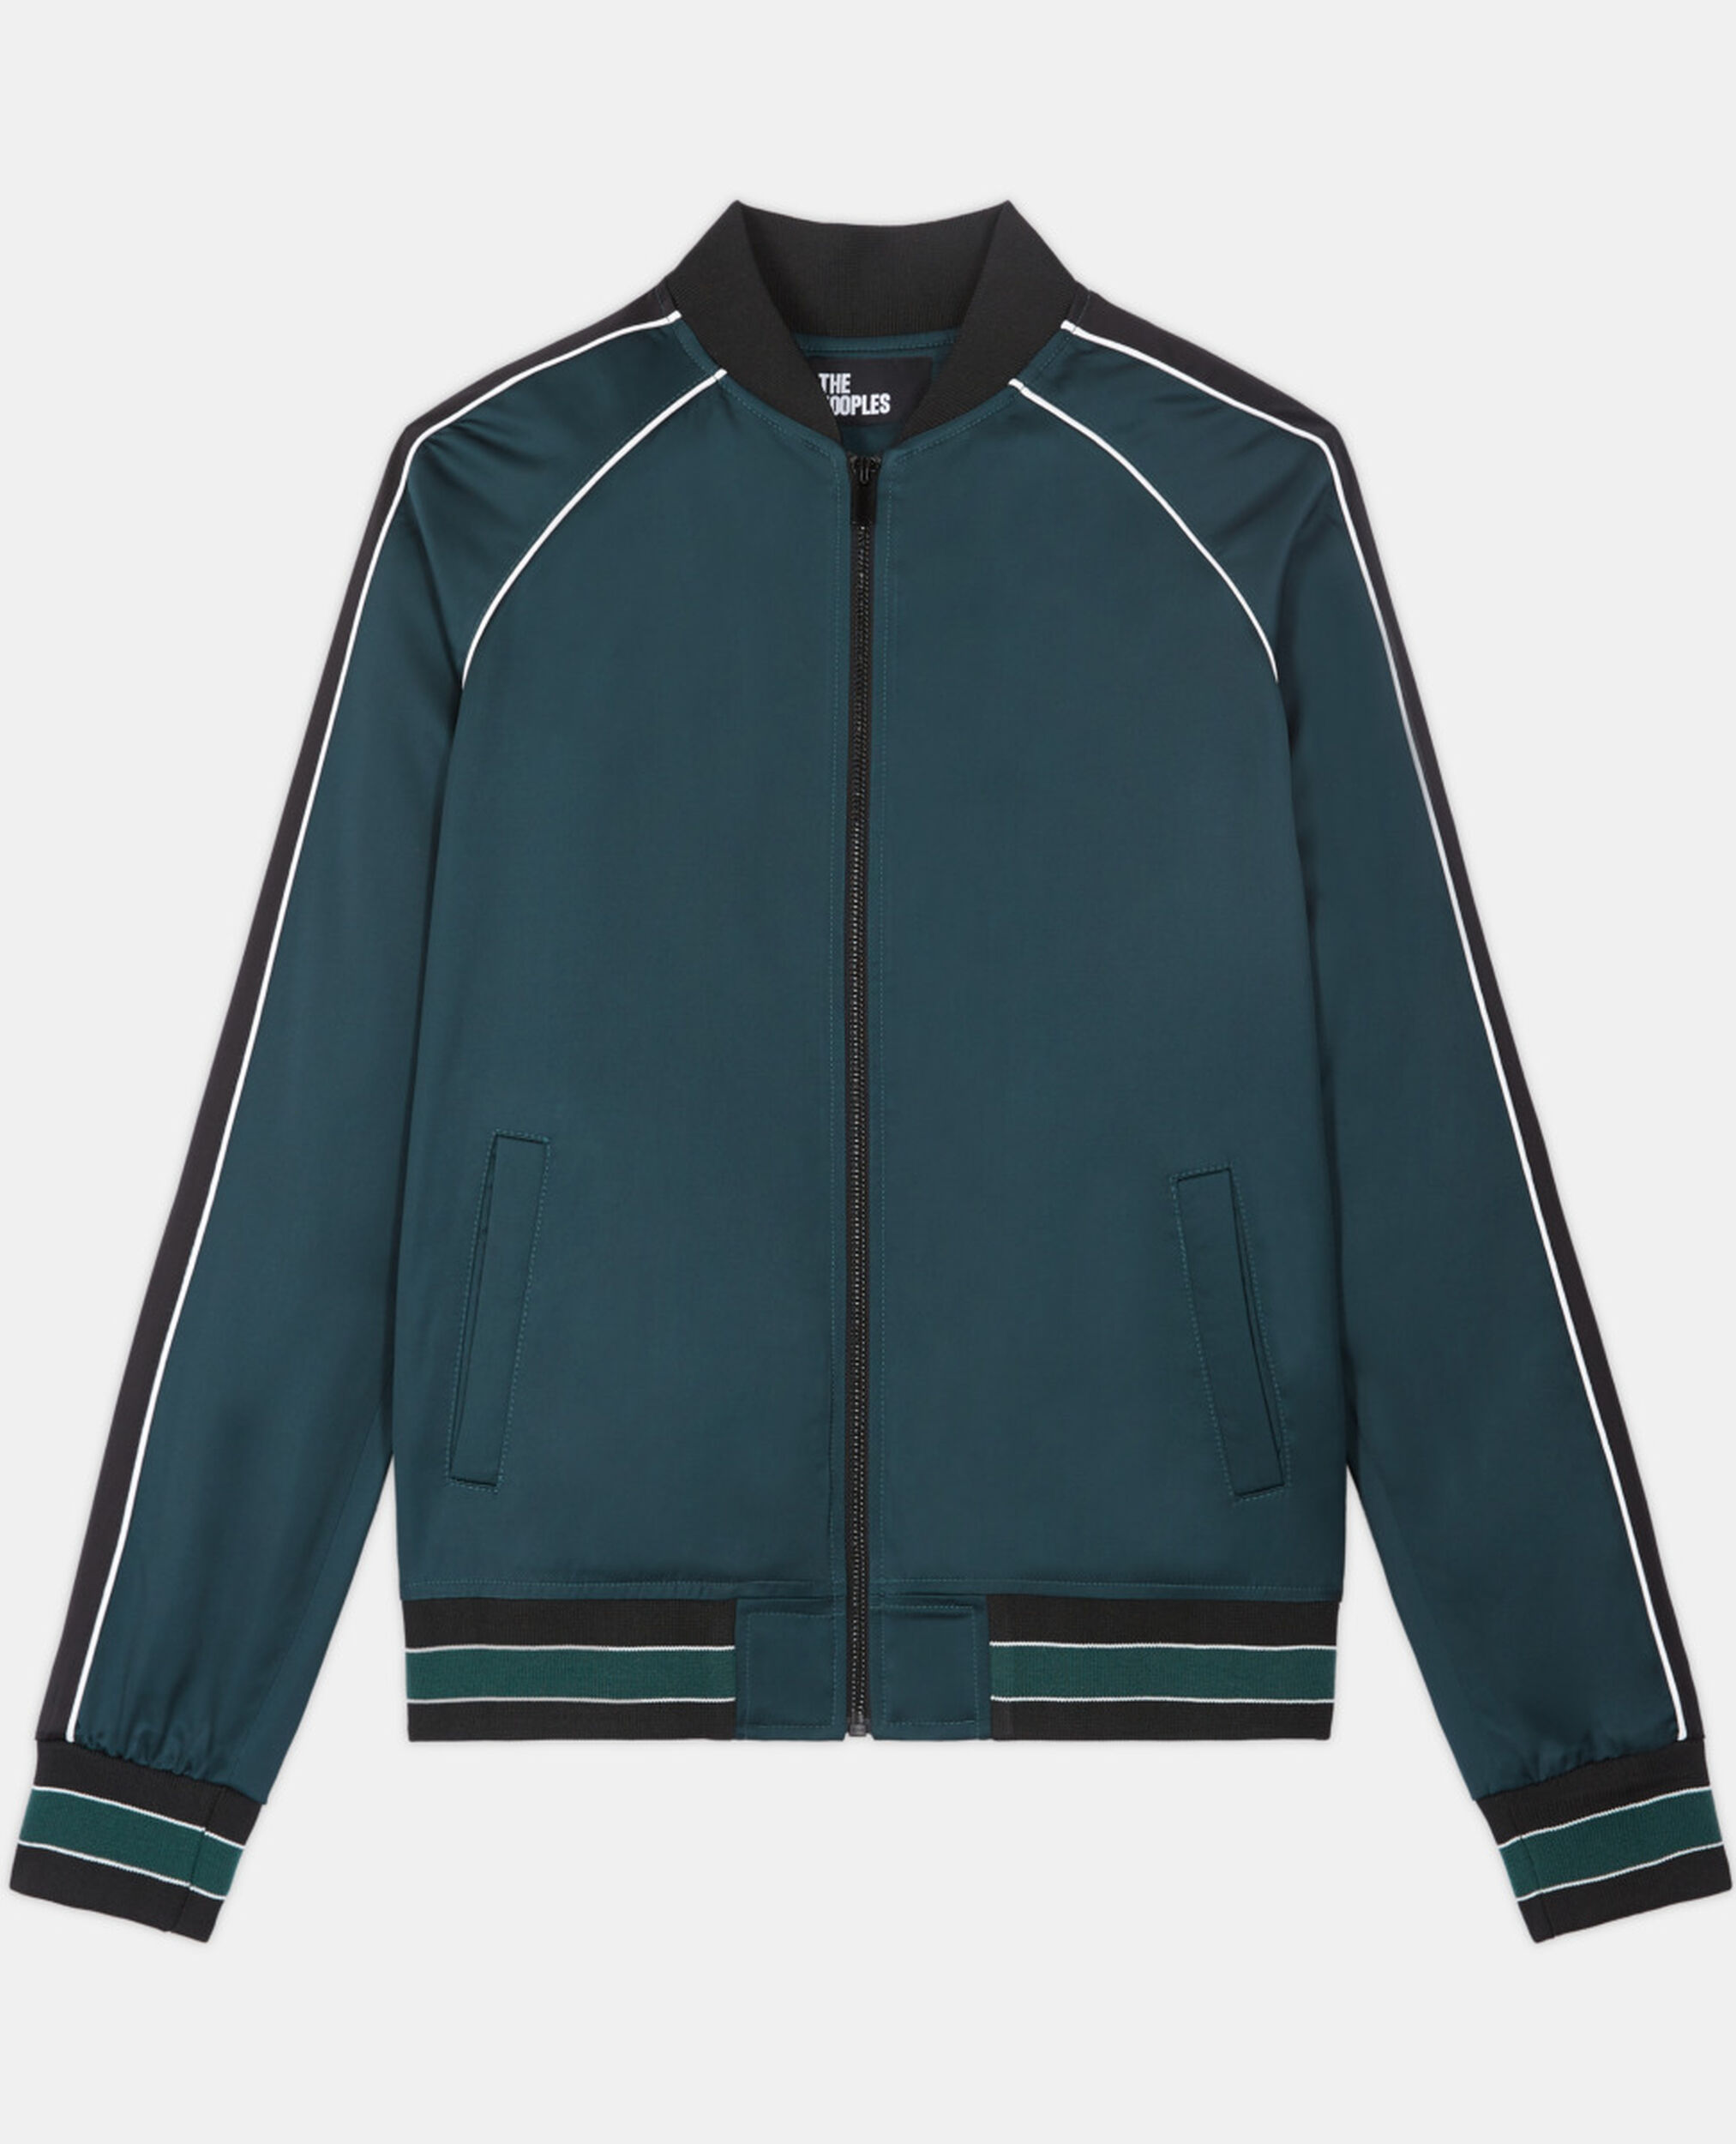 Sweatshirt zippé bicolore, GREEN NAVY, hi-res image number null